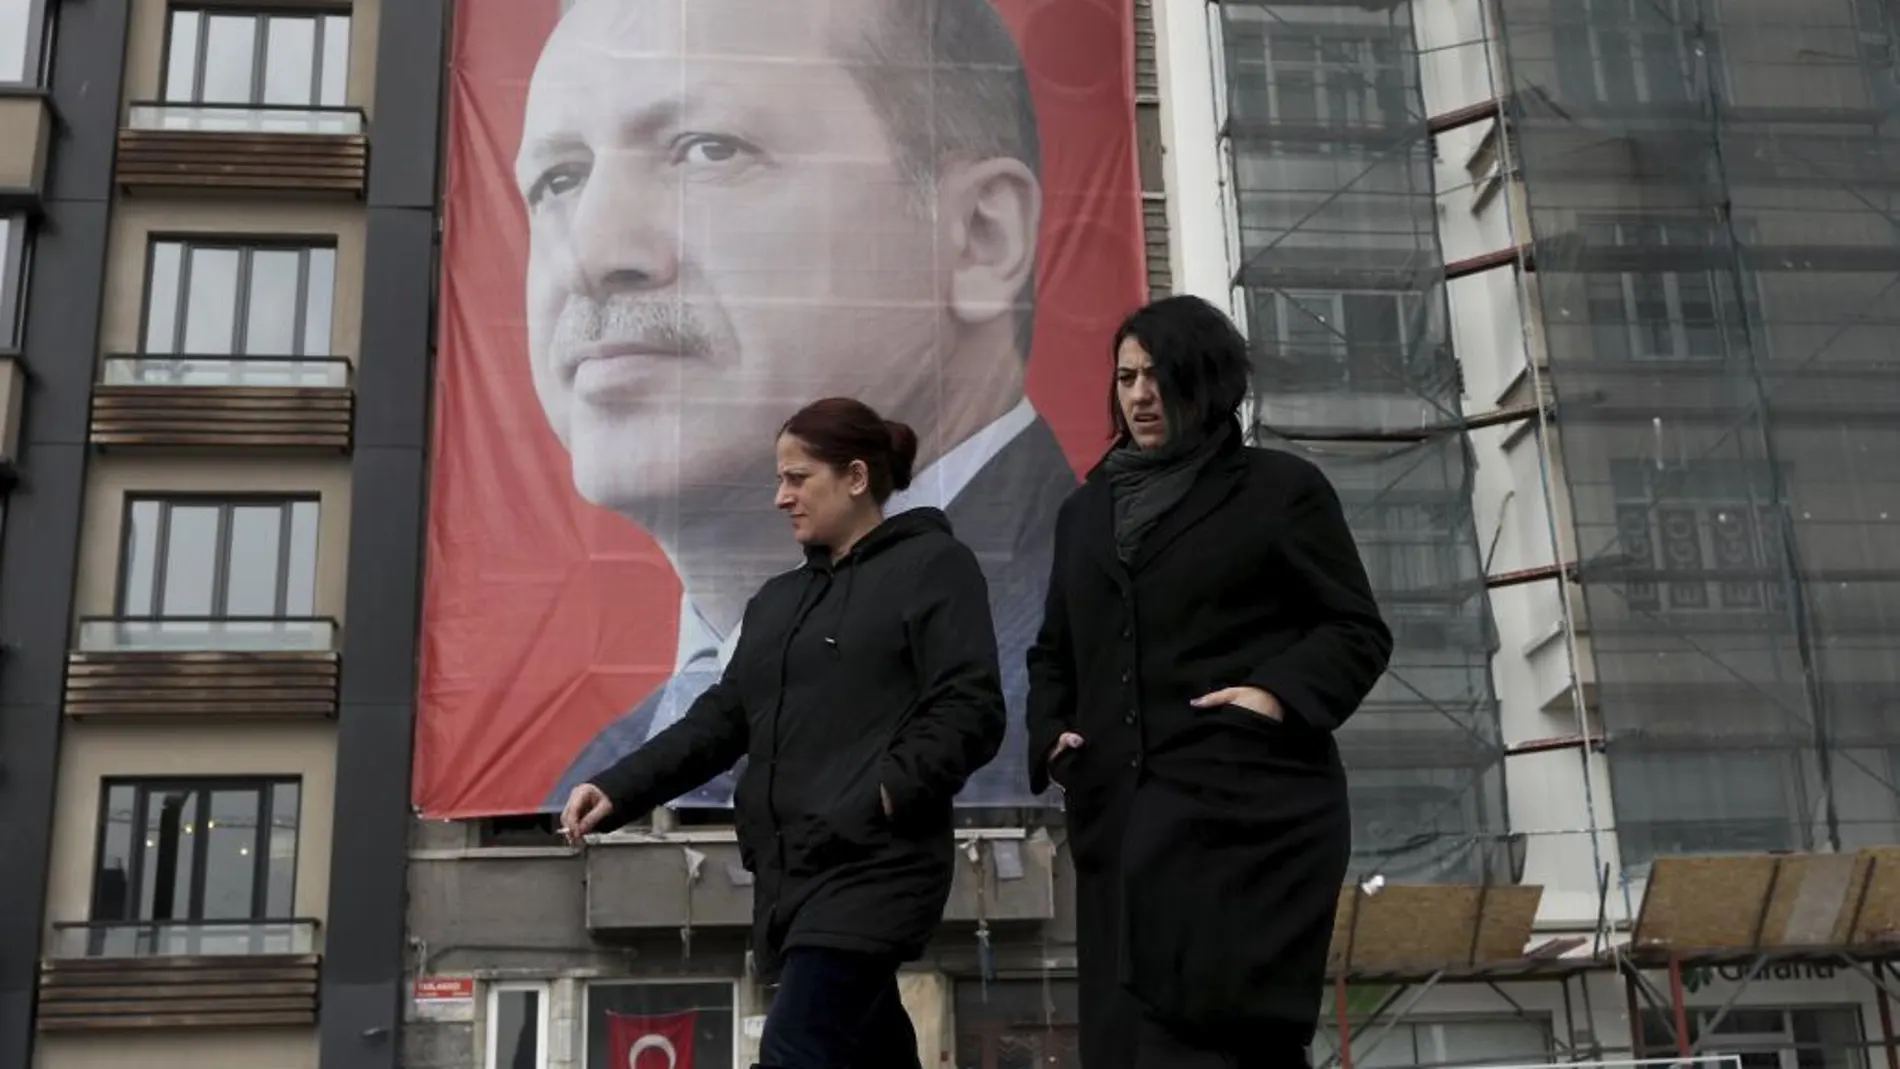 Una fotografía del presidente turco, Recep Tayyip Erdogan, preside la plaza Taksim en Estambul